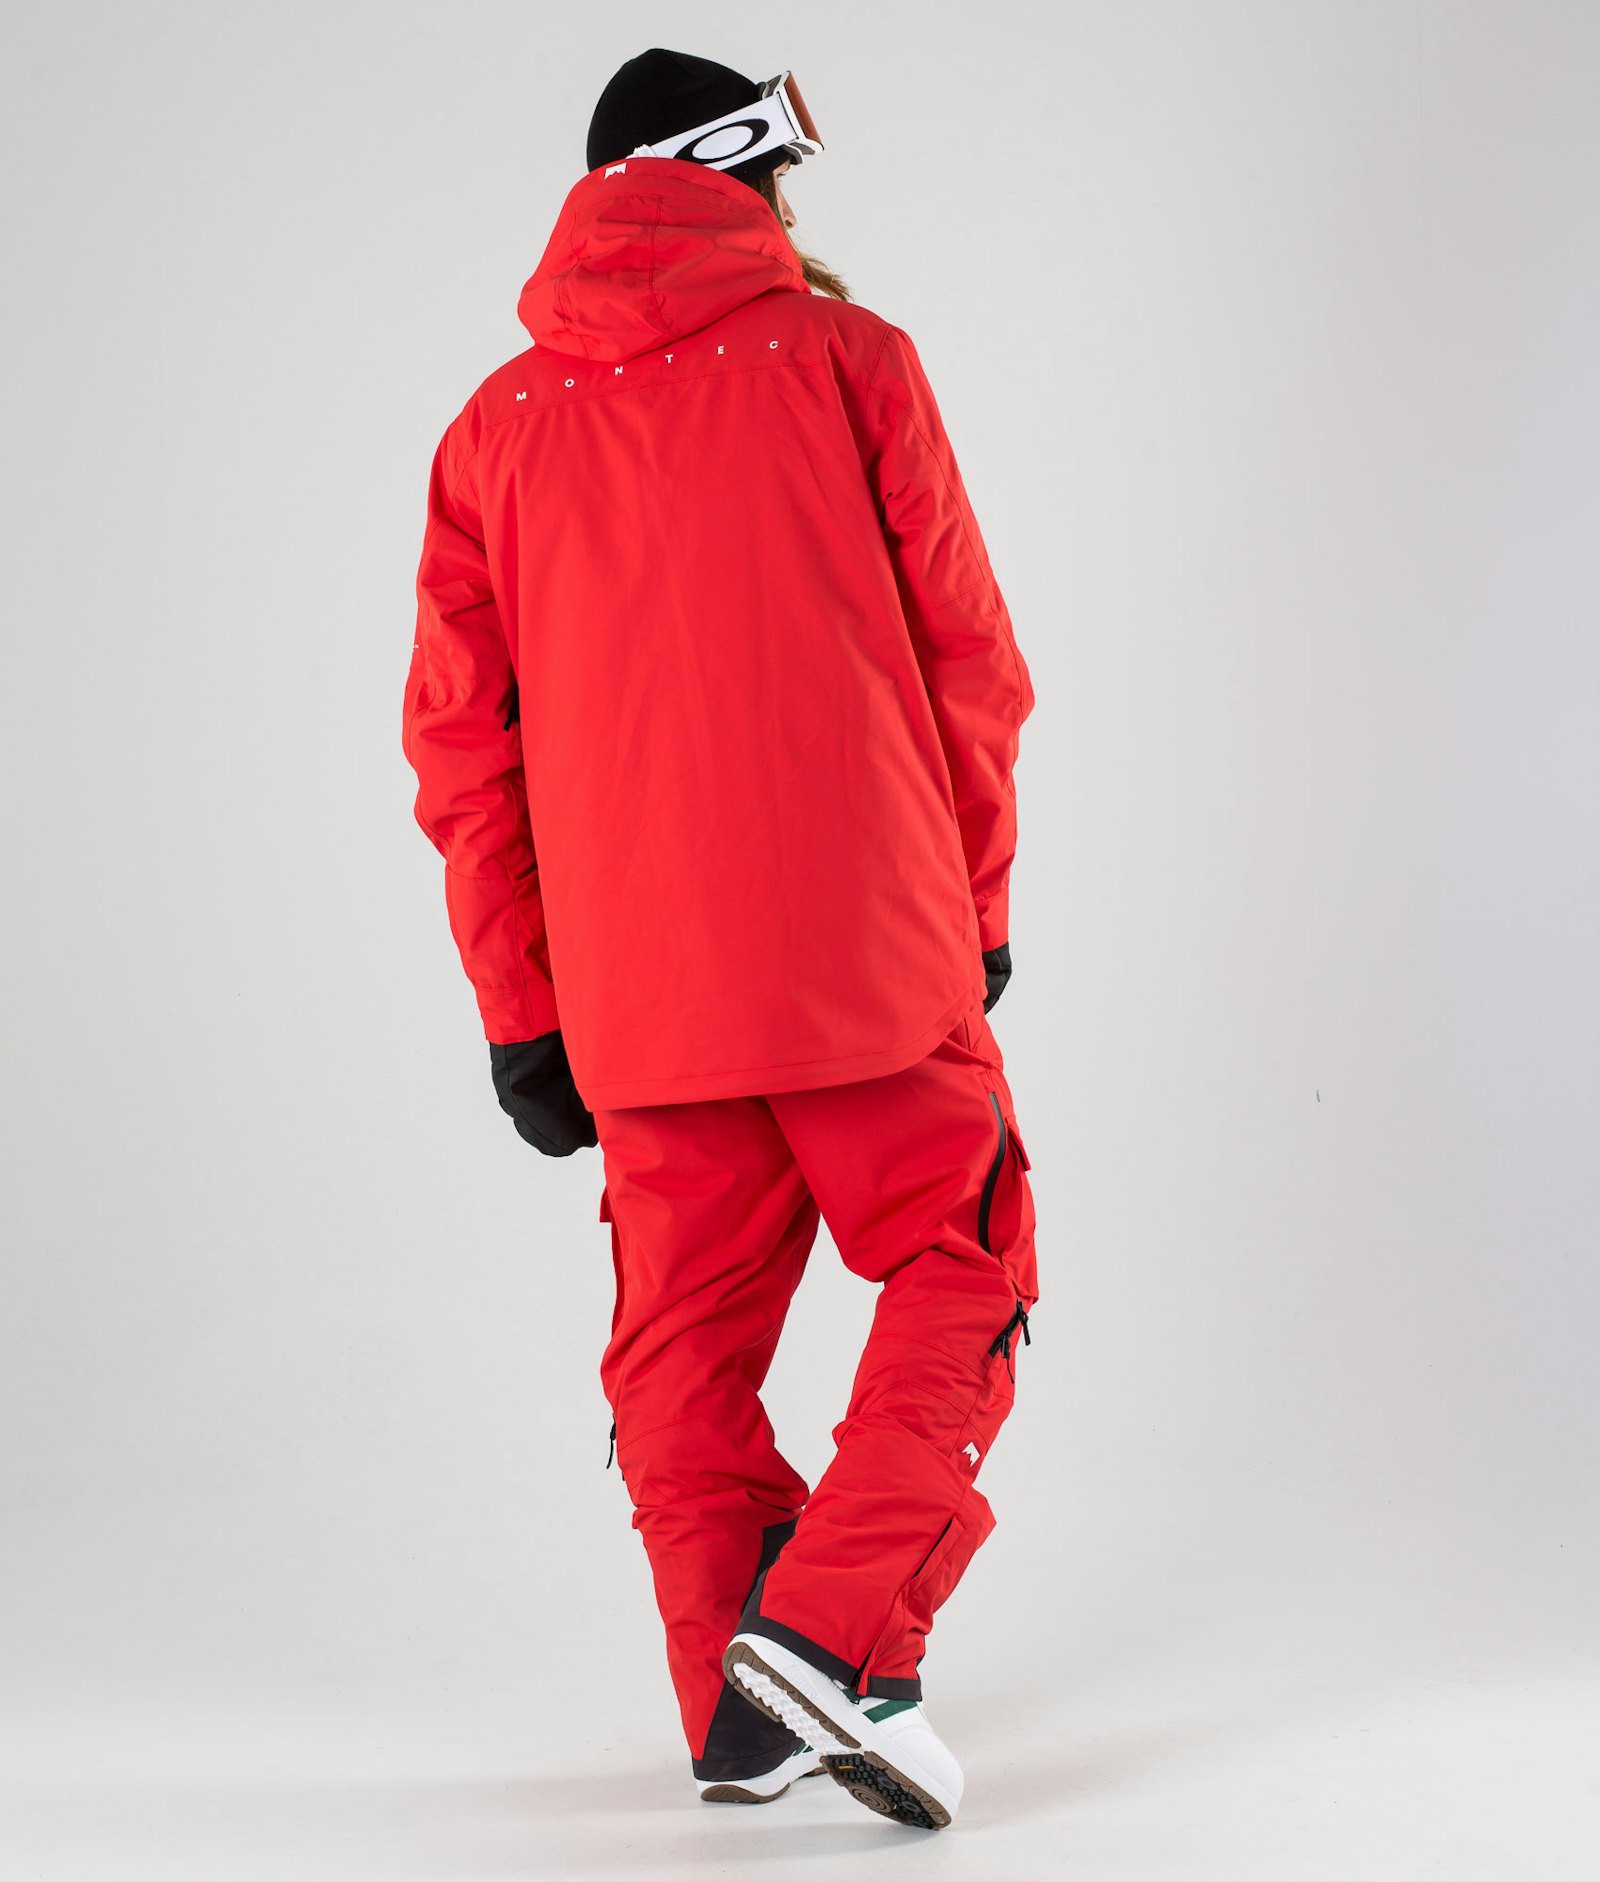 Fawk 2019 Snowboard Jacket Men Red Renewed